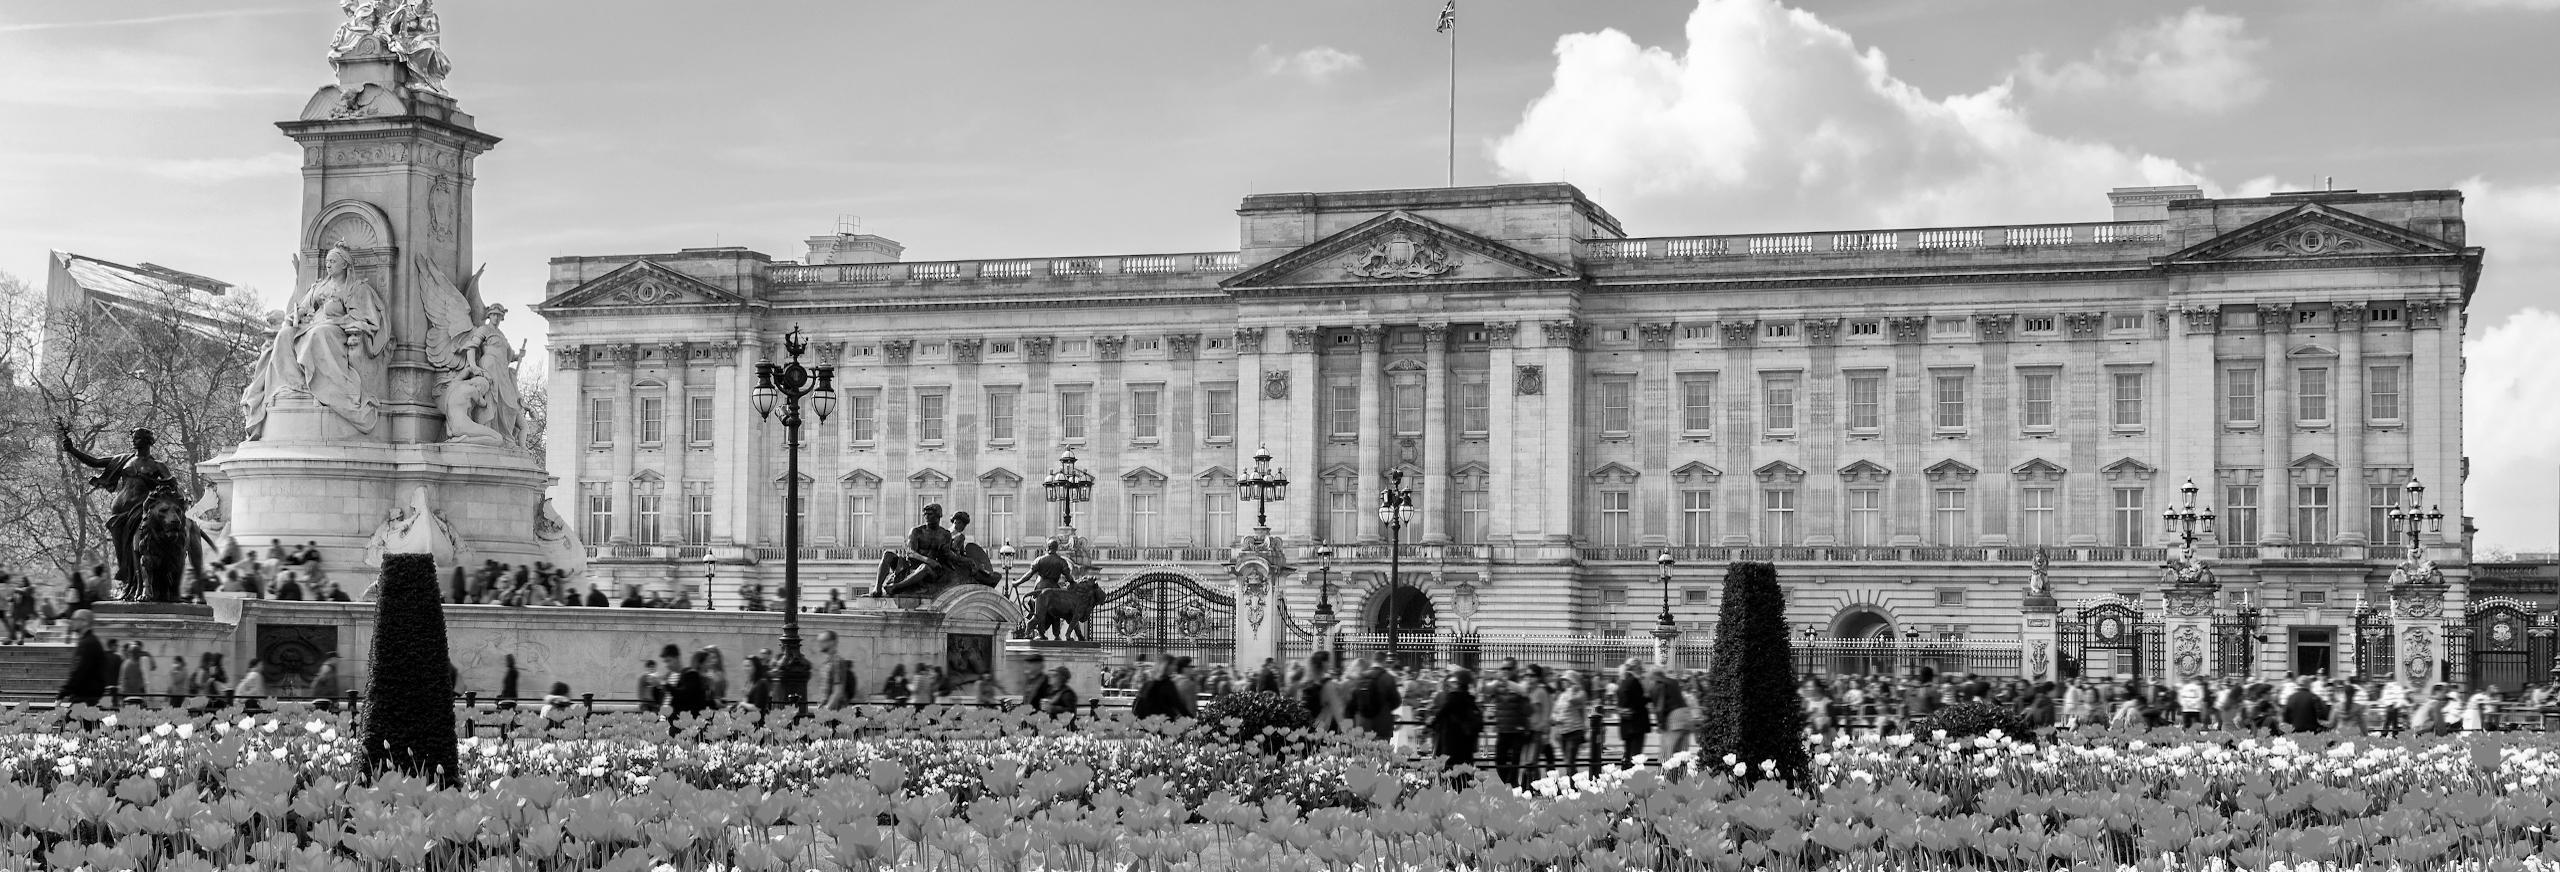 Buckingham Palace greyscale